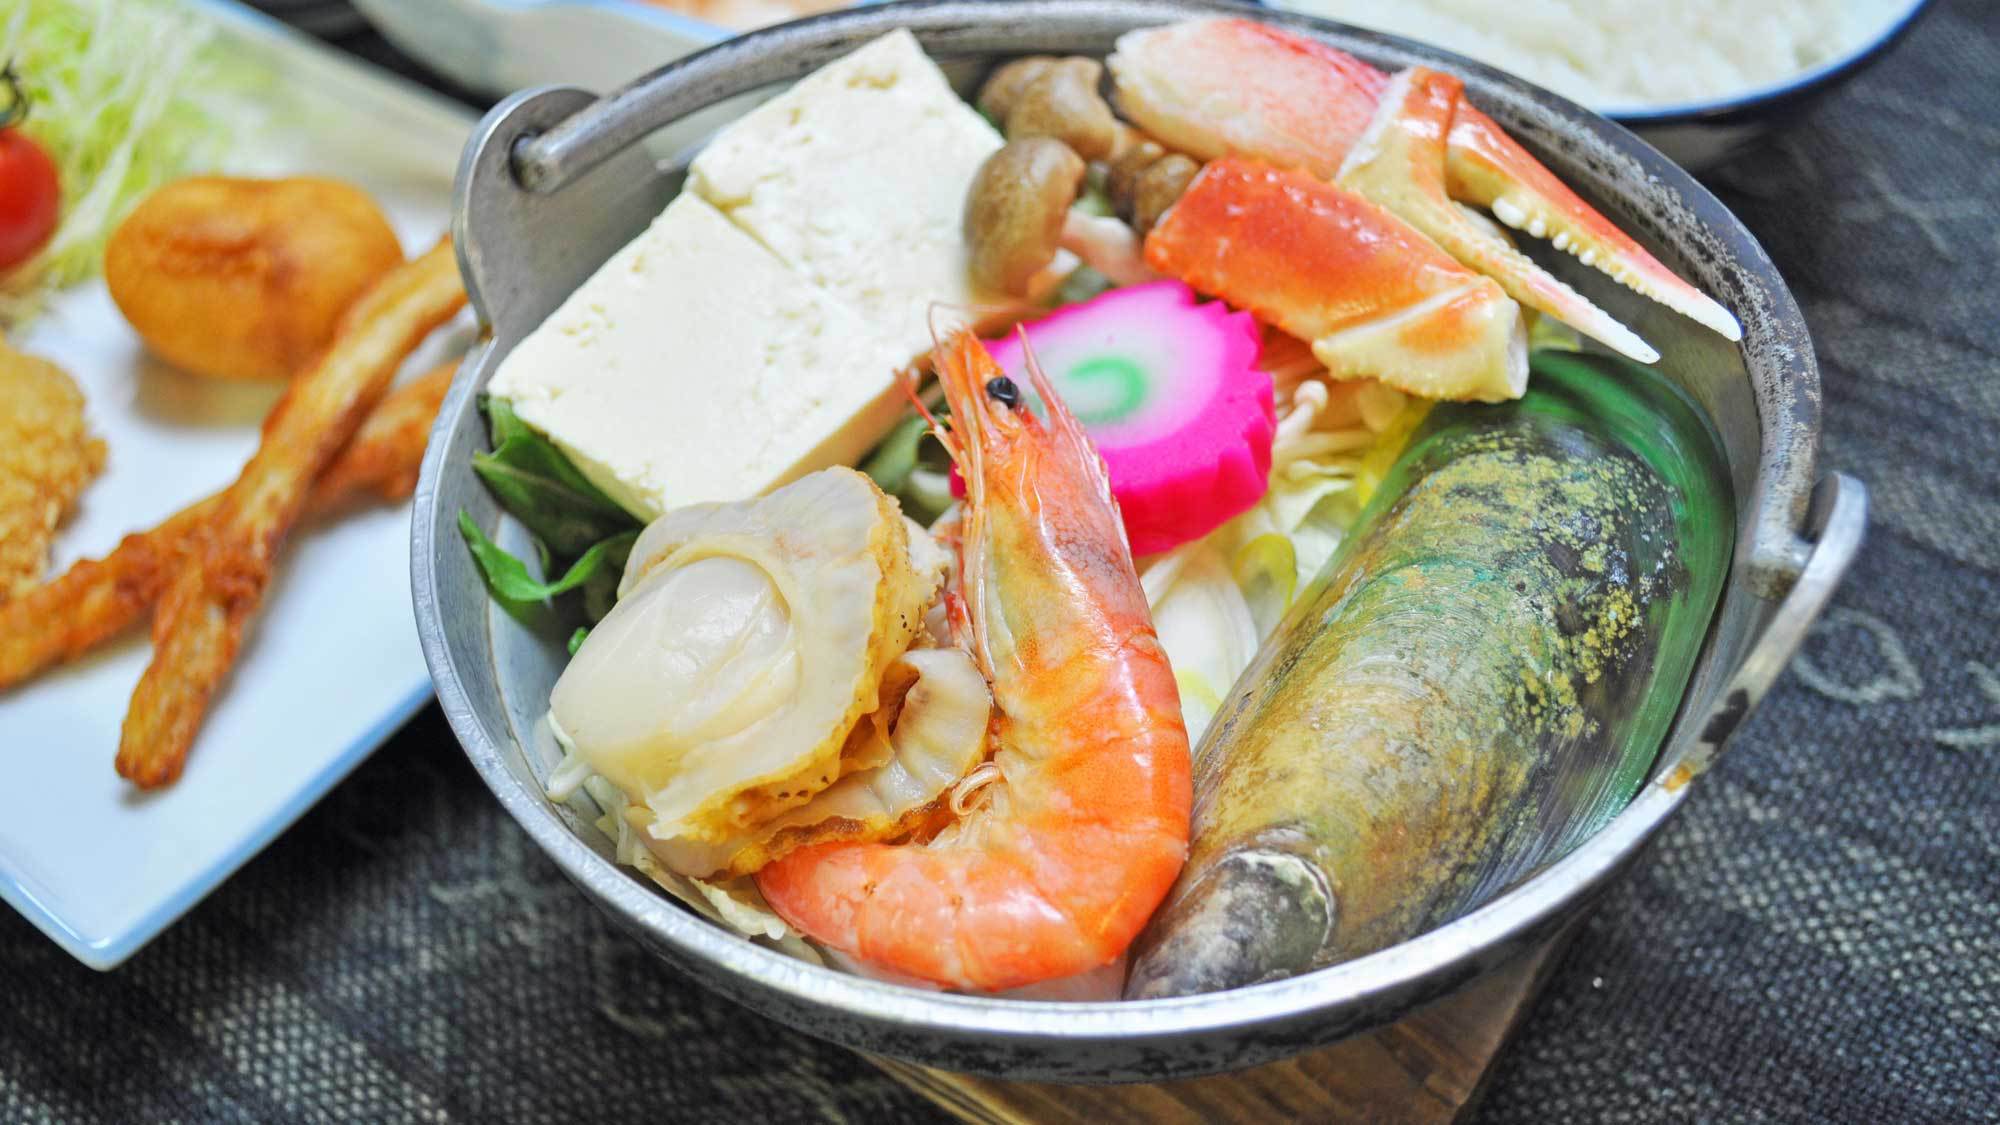 【夕食】ウトロ産魚介類をふんだんに使った名物の「ペレケ鍋」♪